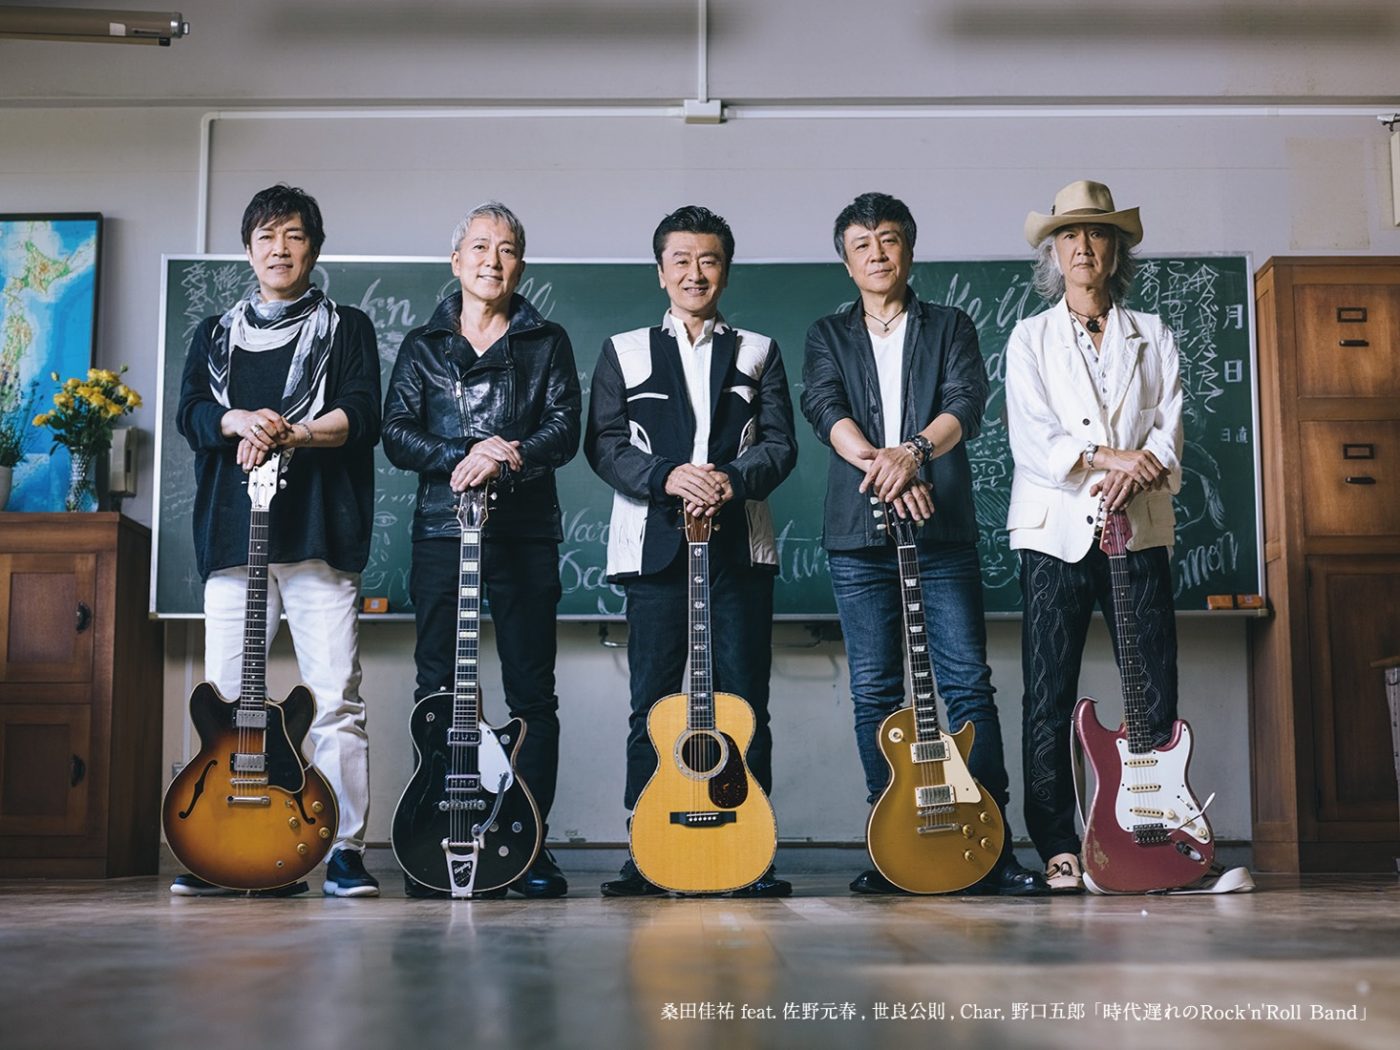 桑田佳祐が、日本音楽界の“同級生”4人と歌う「時代遅れのRock’n’Roll Band」がオリコンにて初登場1位を獲得